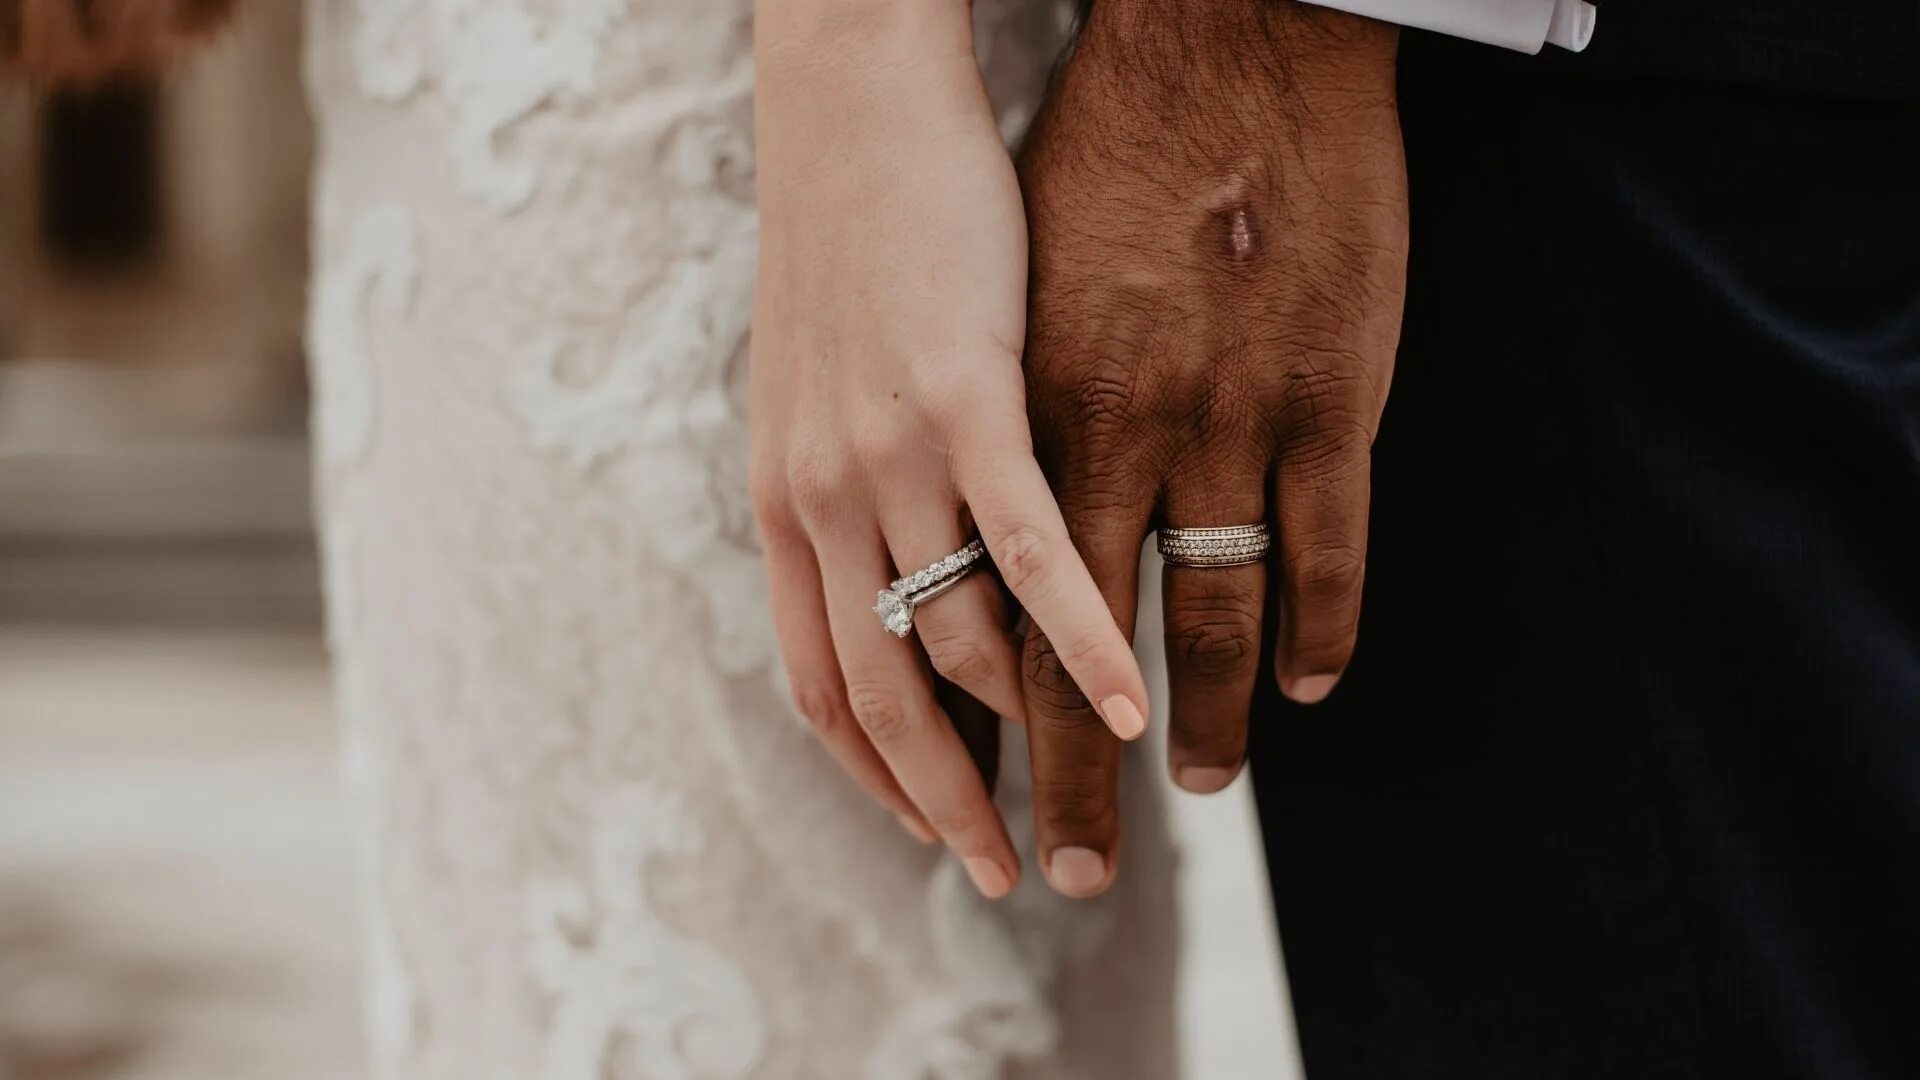 Кольцо замужества. Обручальные кольца на руках. Свадебные кольца на руках. Свадьба руки с кольцами. Кольца жениха и невесты.